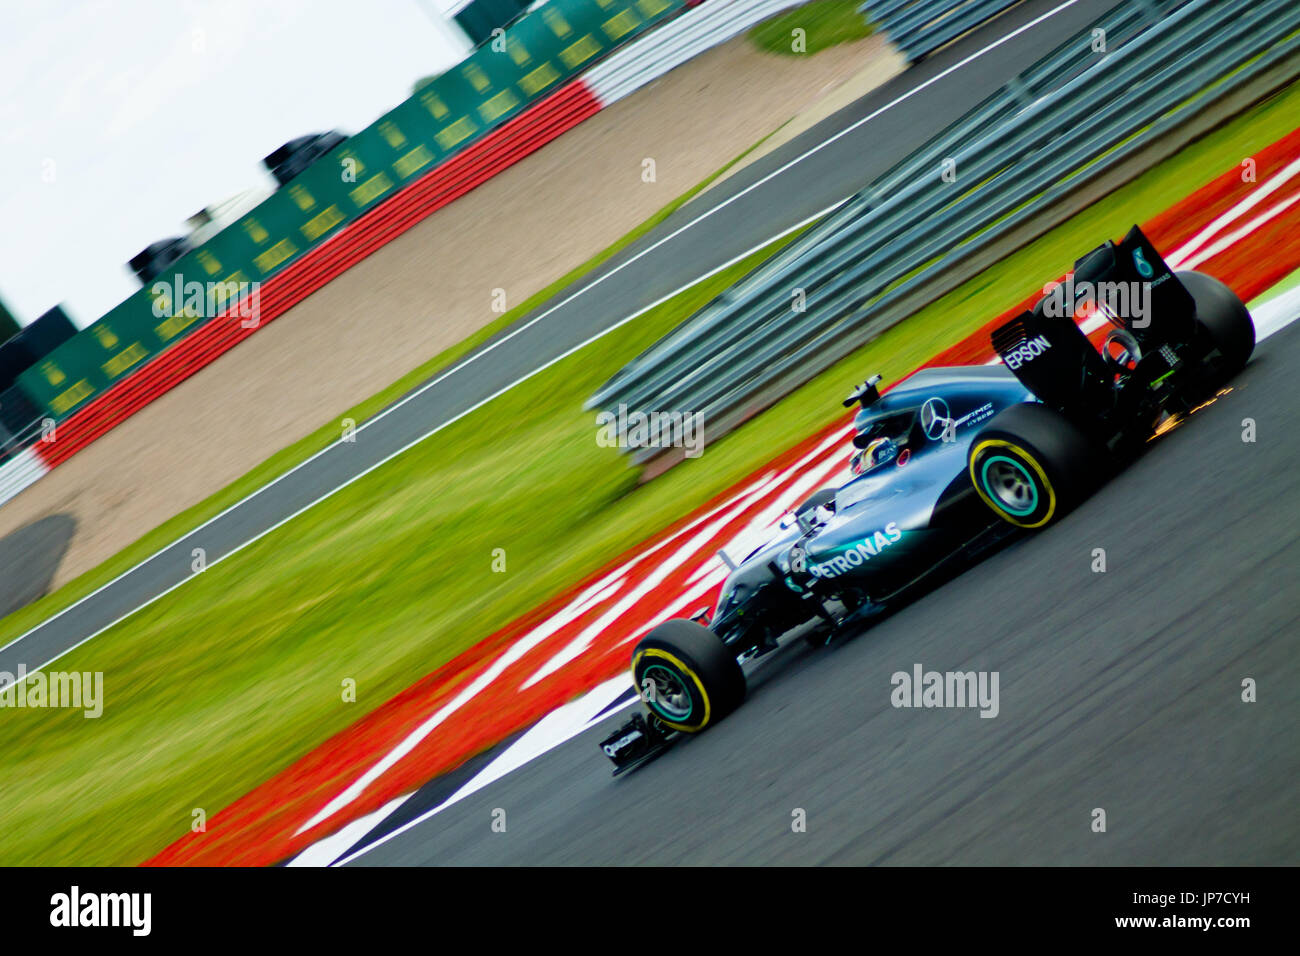 bei der die erste Ecke des Grand Prix von Silverstone circuit während der 2016 britischen Formel 1 Grand Prix Stockfoto